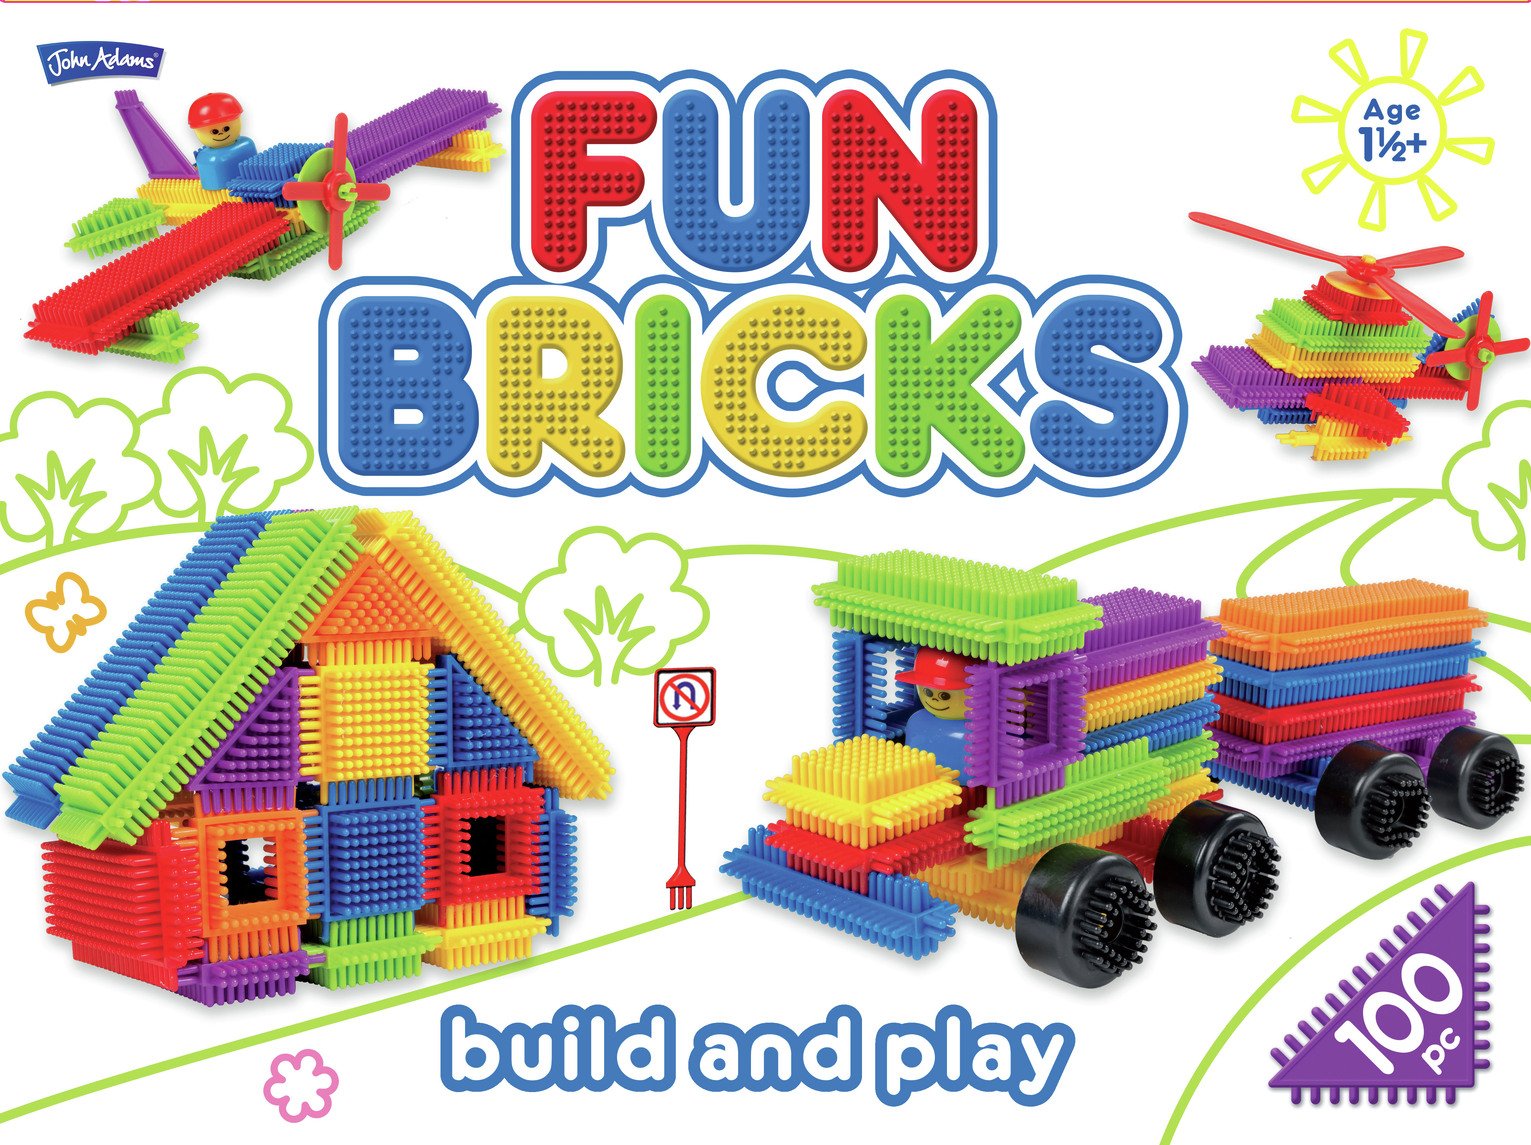 John Adams Fun Bricks - 100 Assorted Pieces